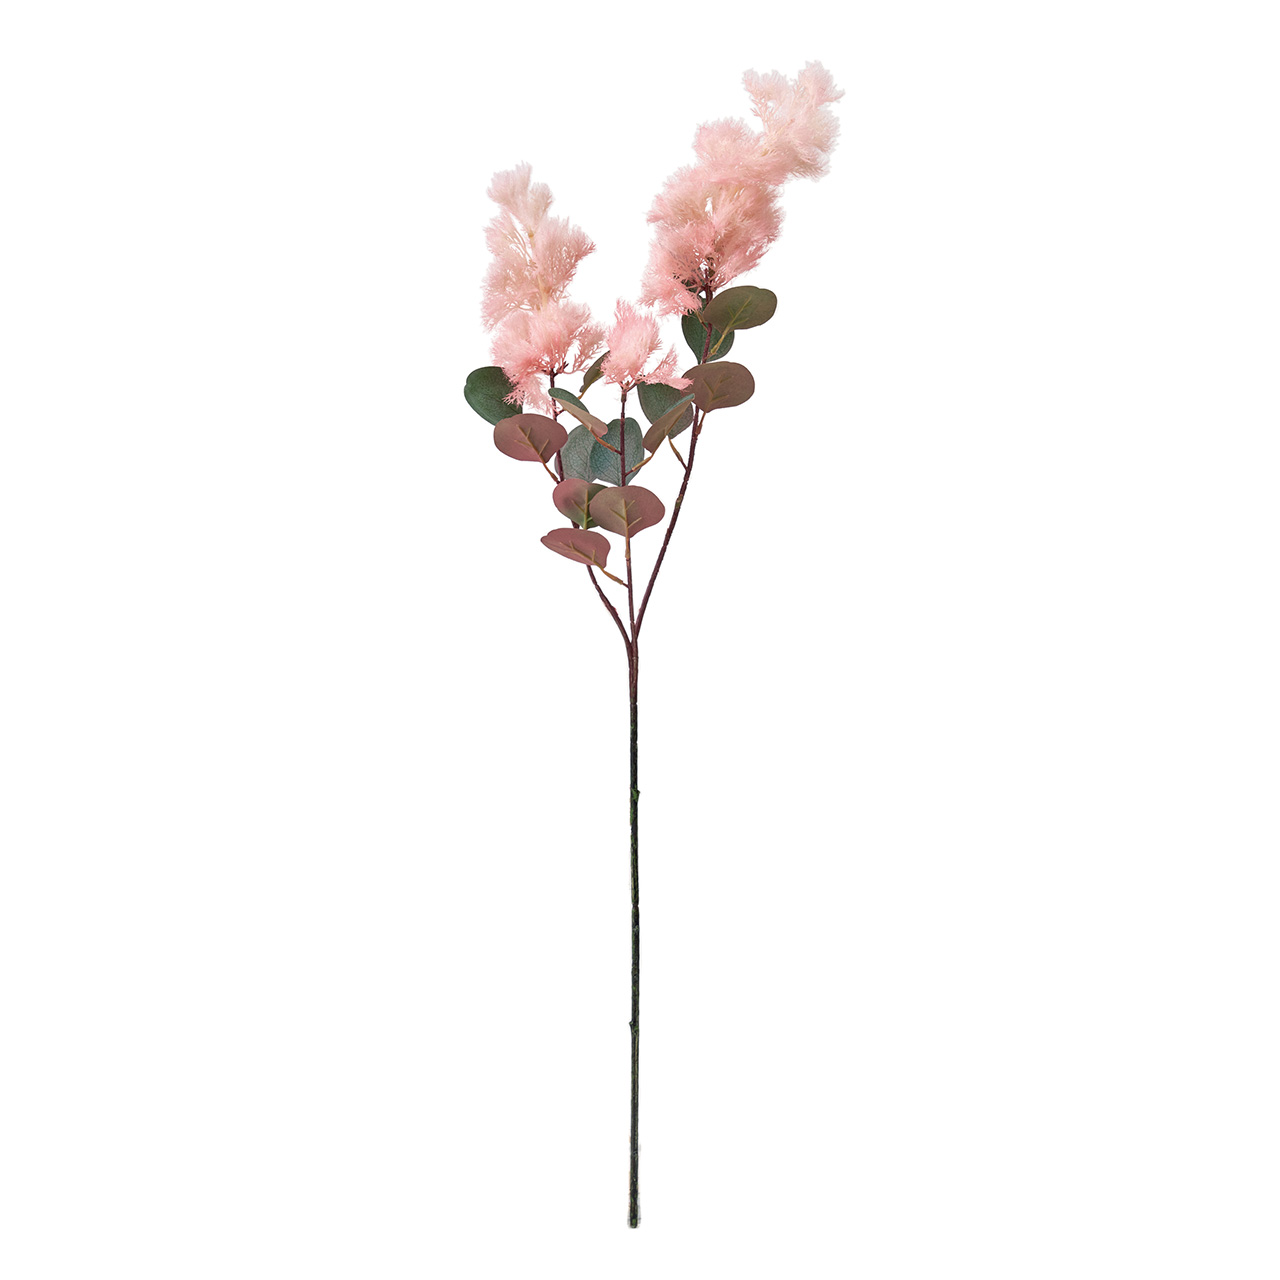 マイフラ 通販 Magiq スモークツリースプレー ピンク アーティフィシャルフラワー 造花 Fm 002 ピンク Magiq アーティフィシャルフラワー 造花 全国にmagiq 花器 花資材などをお届けします